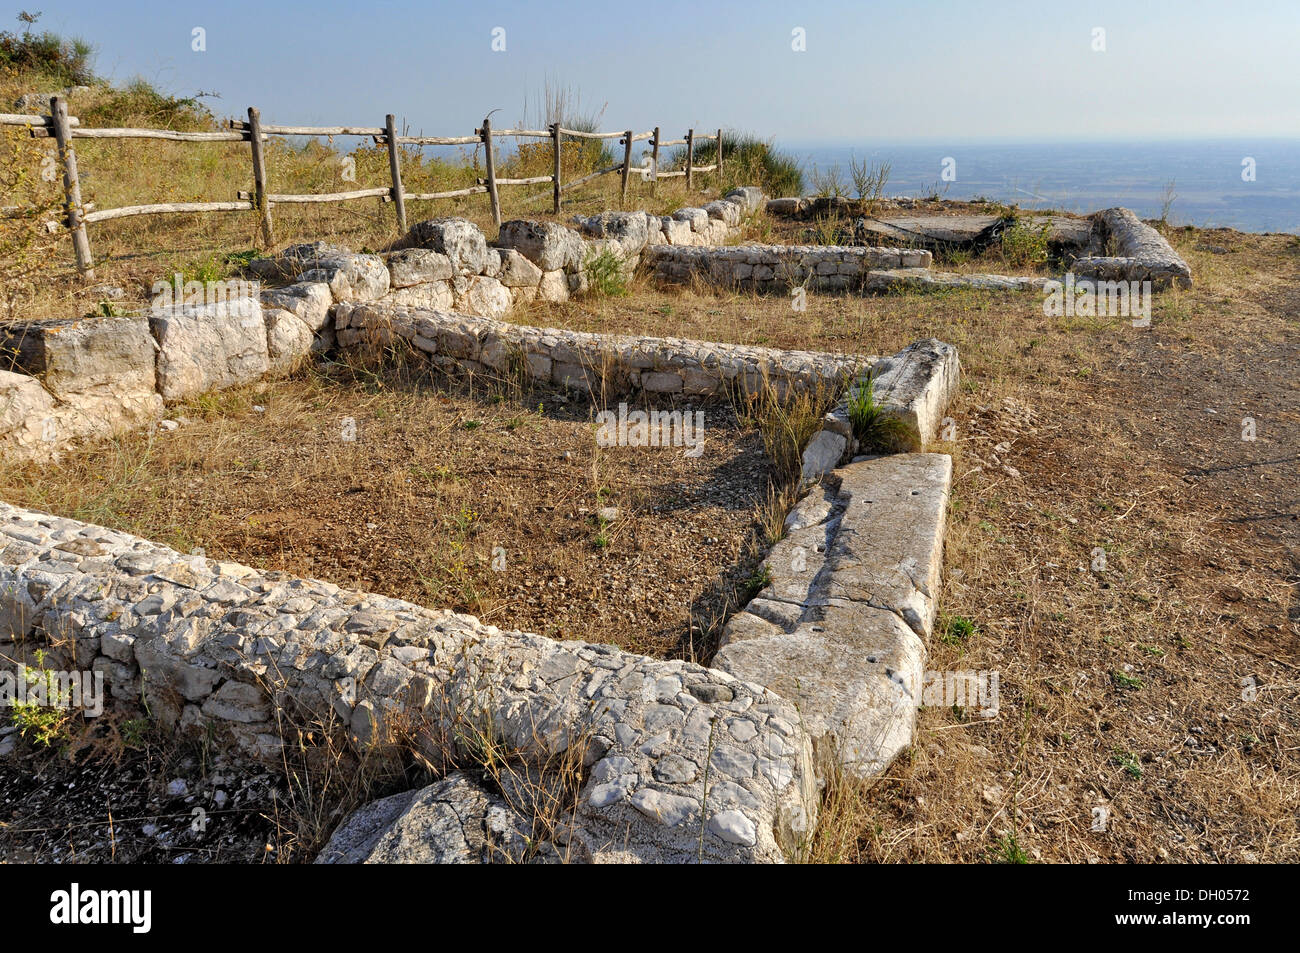 Los restos de casas en el sitio arqueológico de la antigua ciudad romana de Norba, siglo iv antes de Cristo, cerca de norma Foto de stock